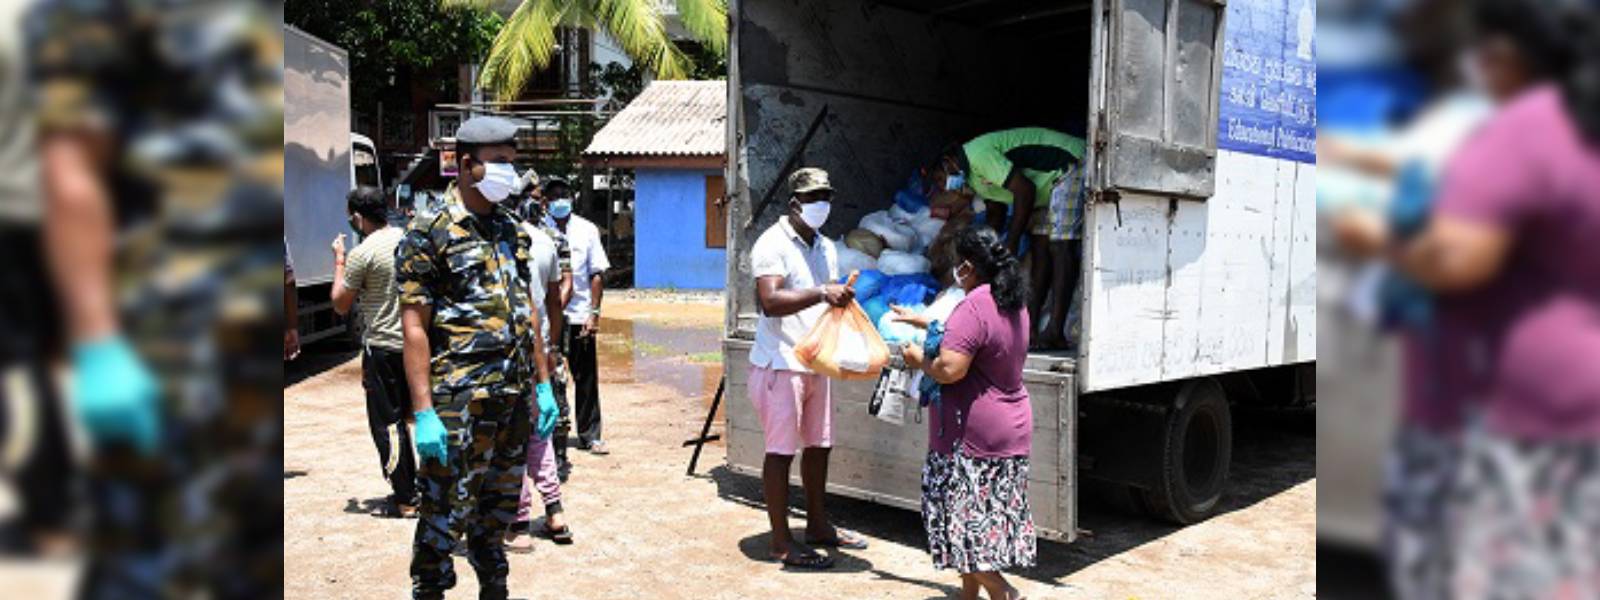 SLAF distributes dry rations among 50,000 families